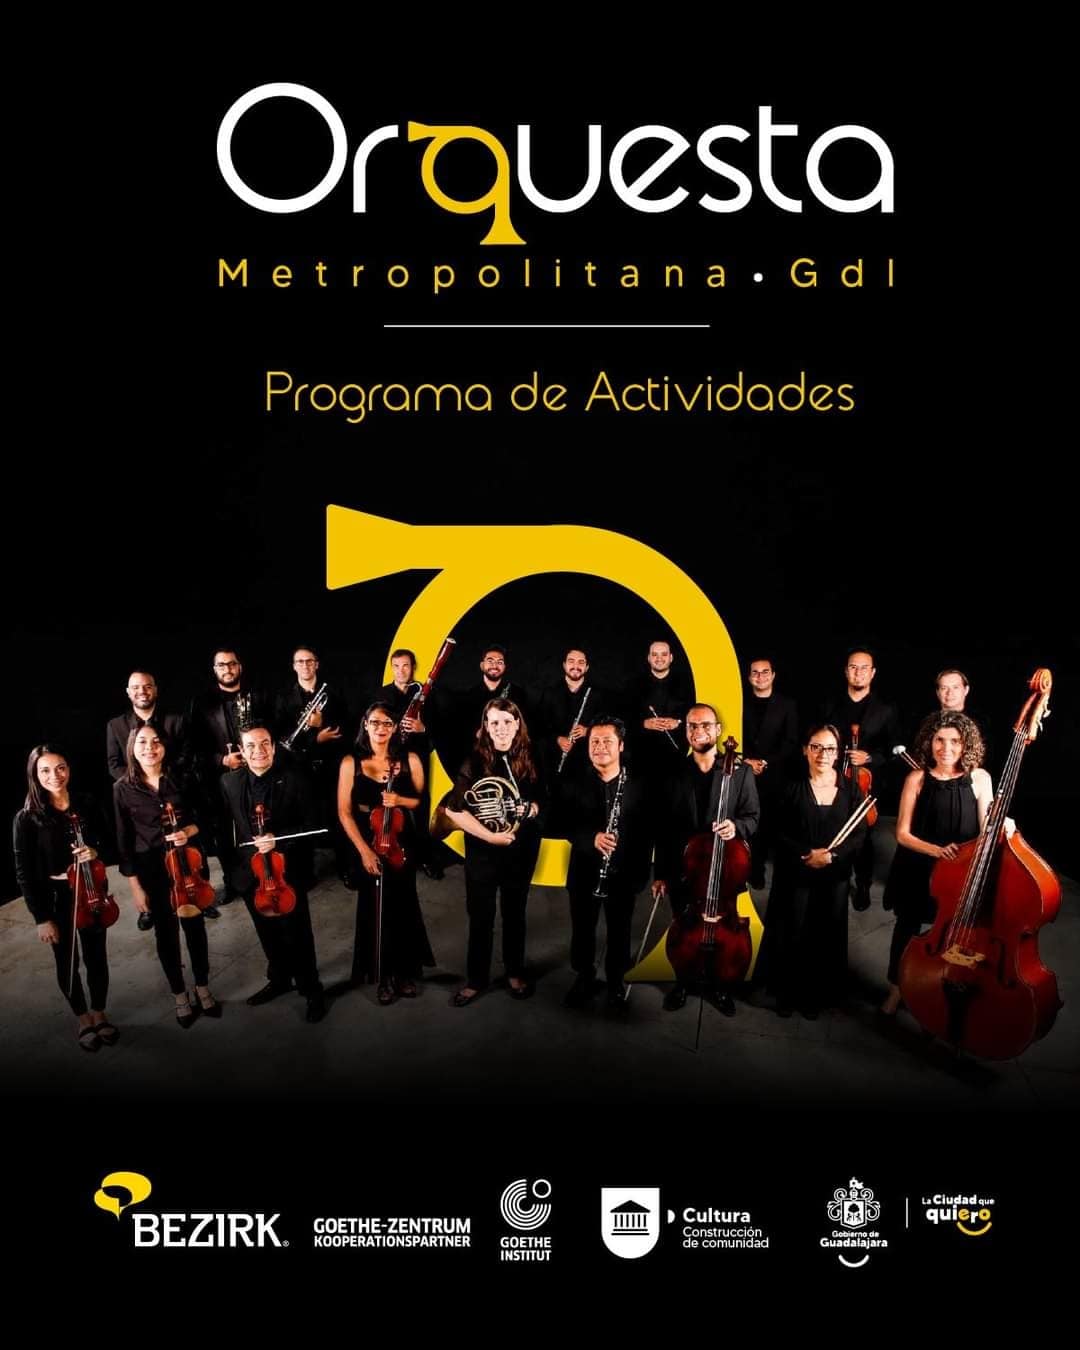 Invitados especiales y un recorrido por Jalisco, en el programa de la Orquesta Metropolitana de Guadalajara